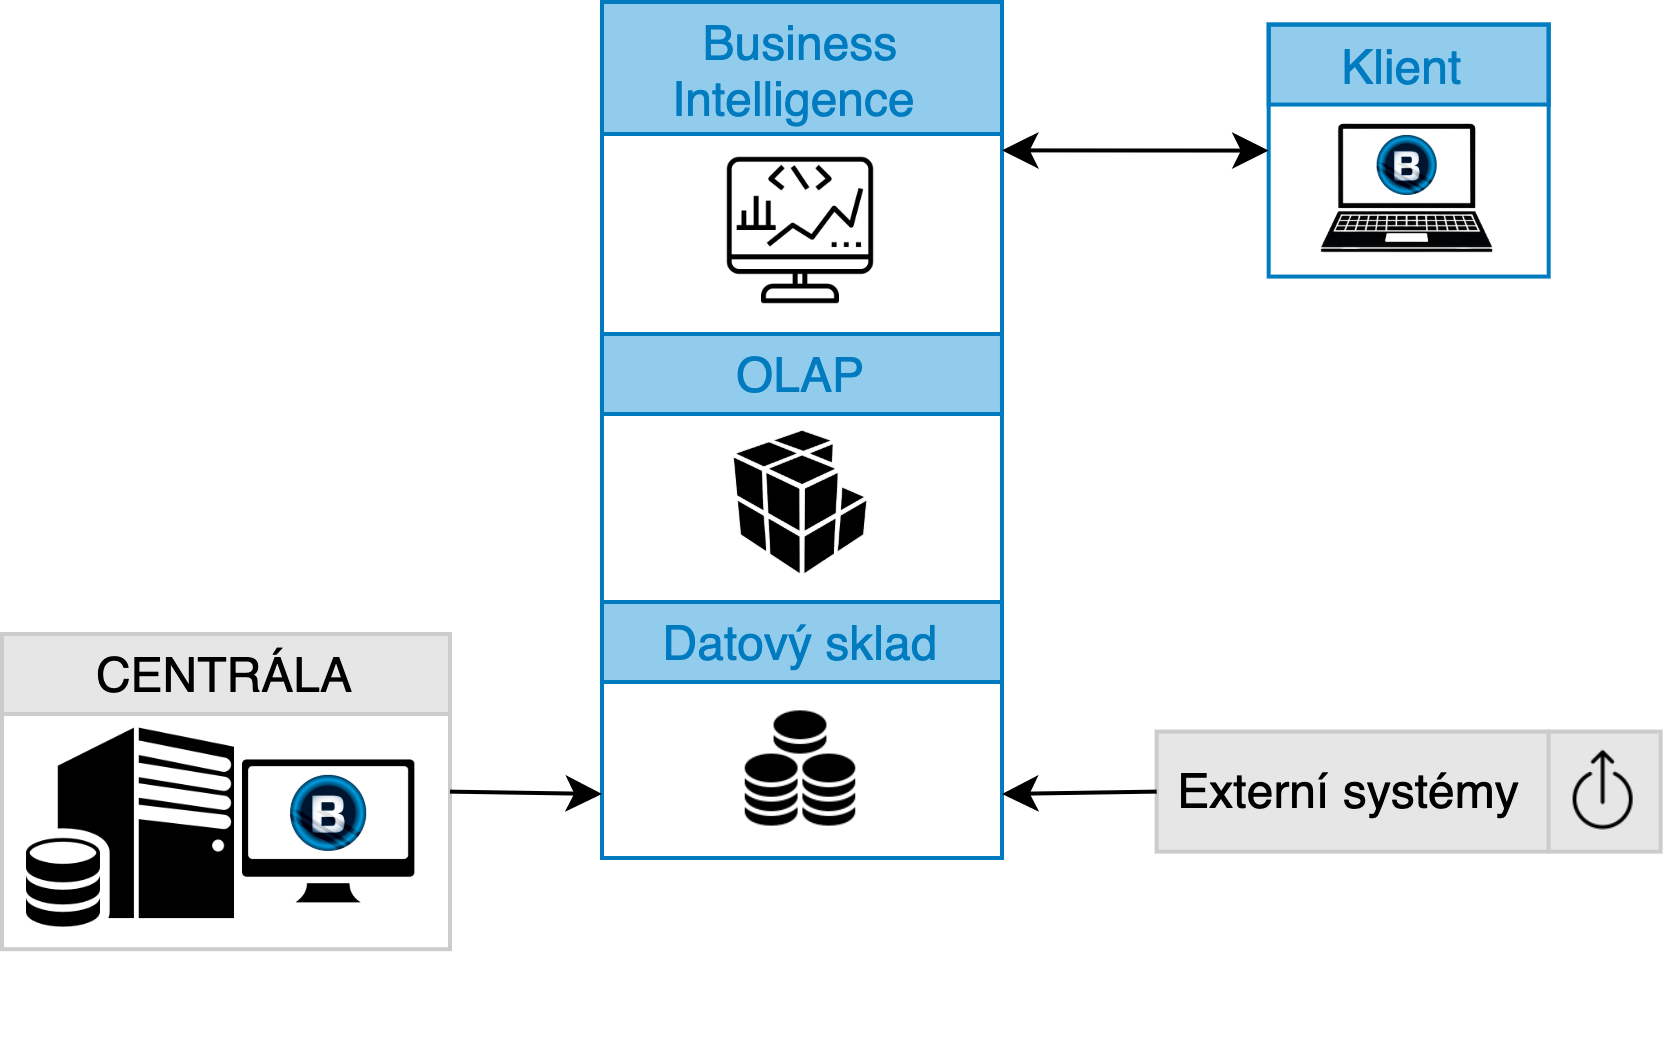 Základní schéma ukazující architekturu systému datových skladů a BI